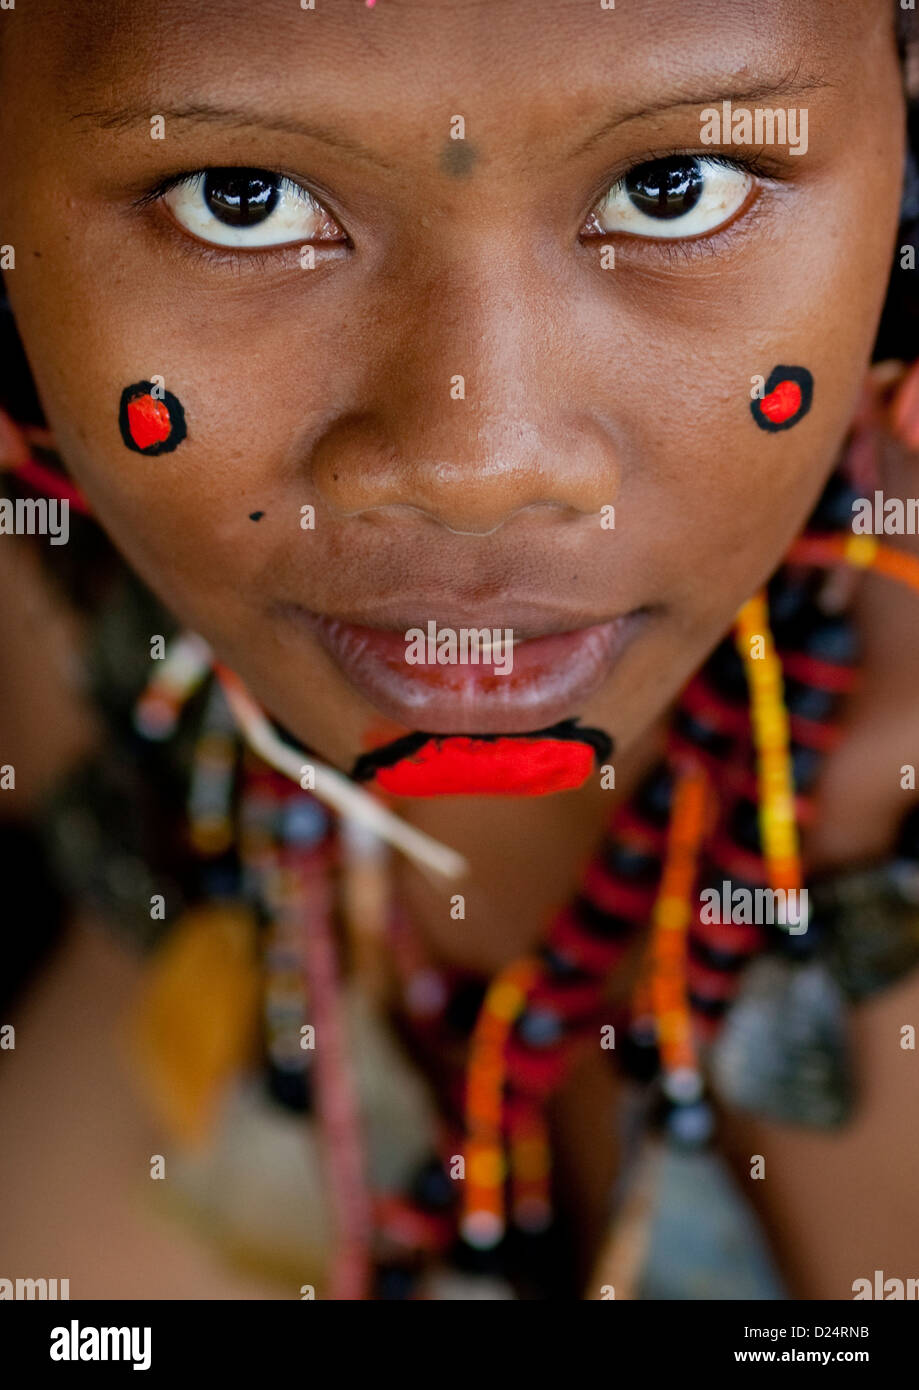 Kiriwina Banque de photographies et d'images à haute résolution - Alamy